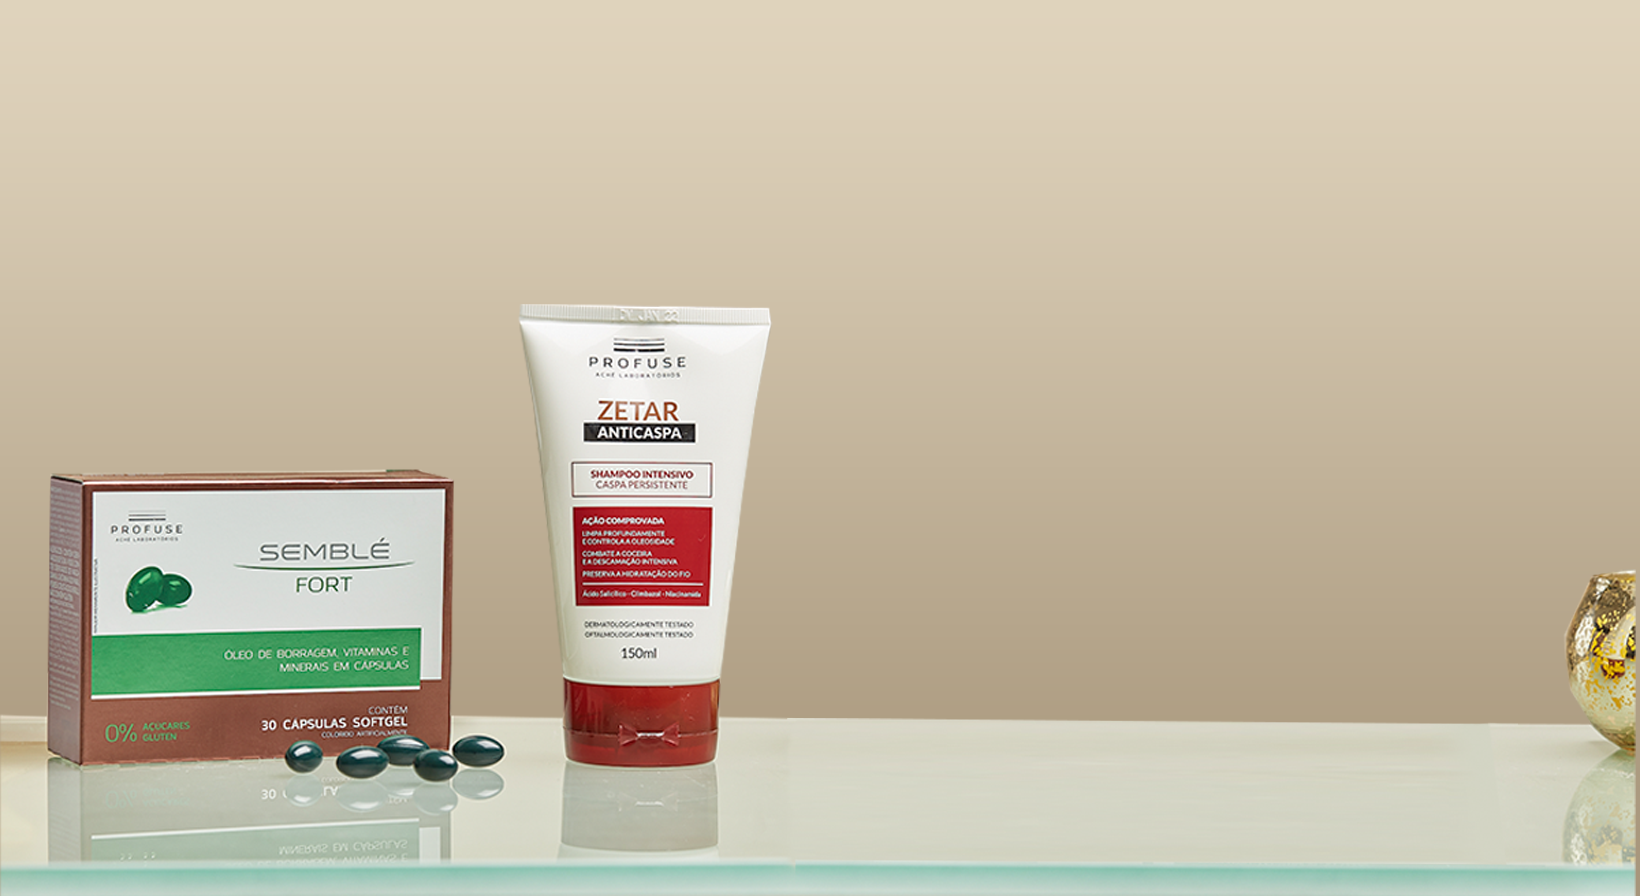 Imagem mostra um fundo neutro e a frente os produtos Semblé Fort, com sua embalagem e cápsulas, e Zetar Intensivo, shampoo anticaspa